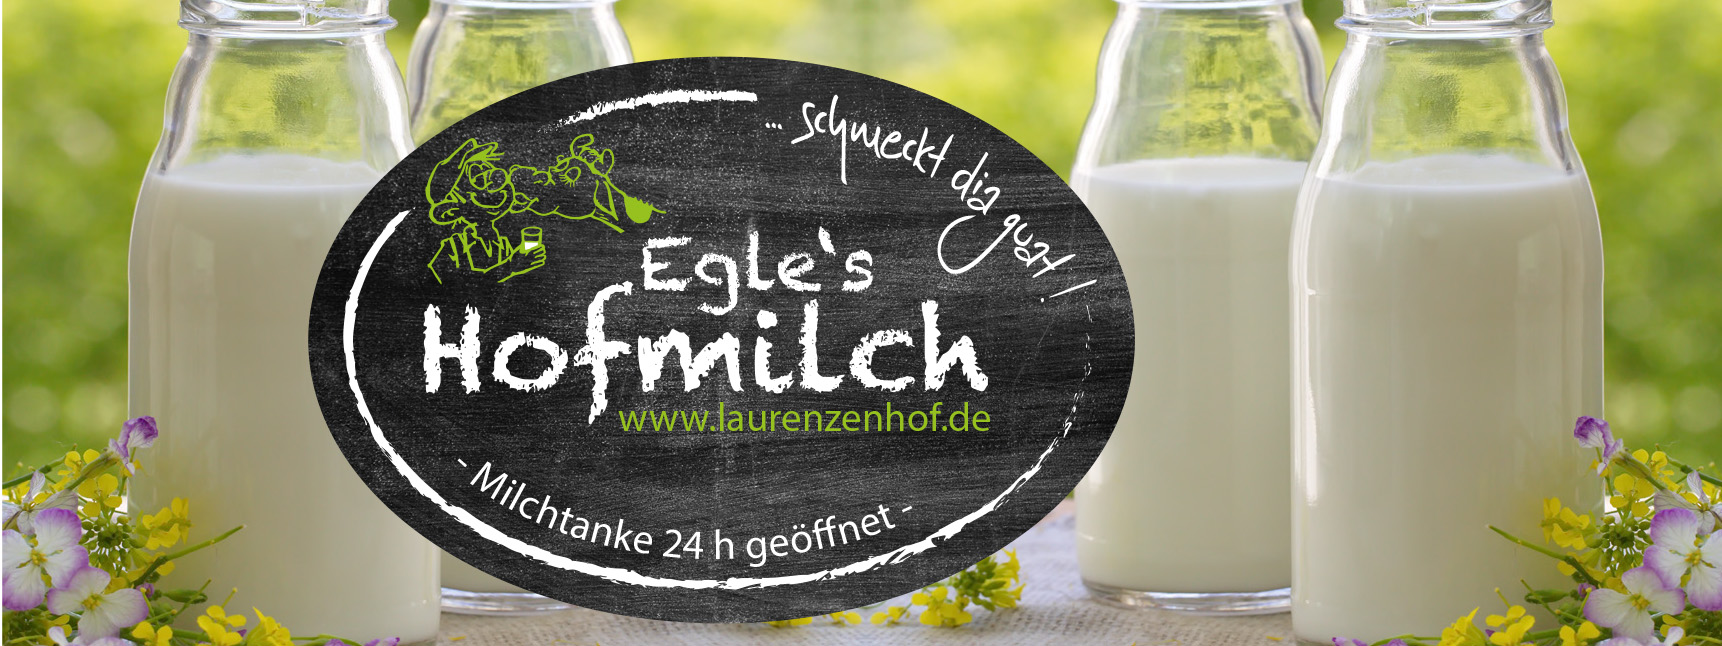 Featured image for “DESIGNkonzept für egle’s hofmilch”